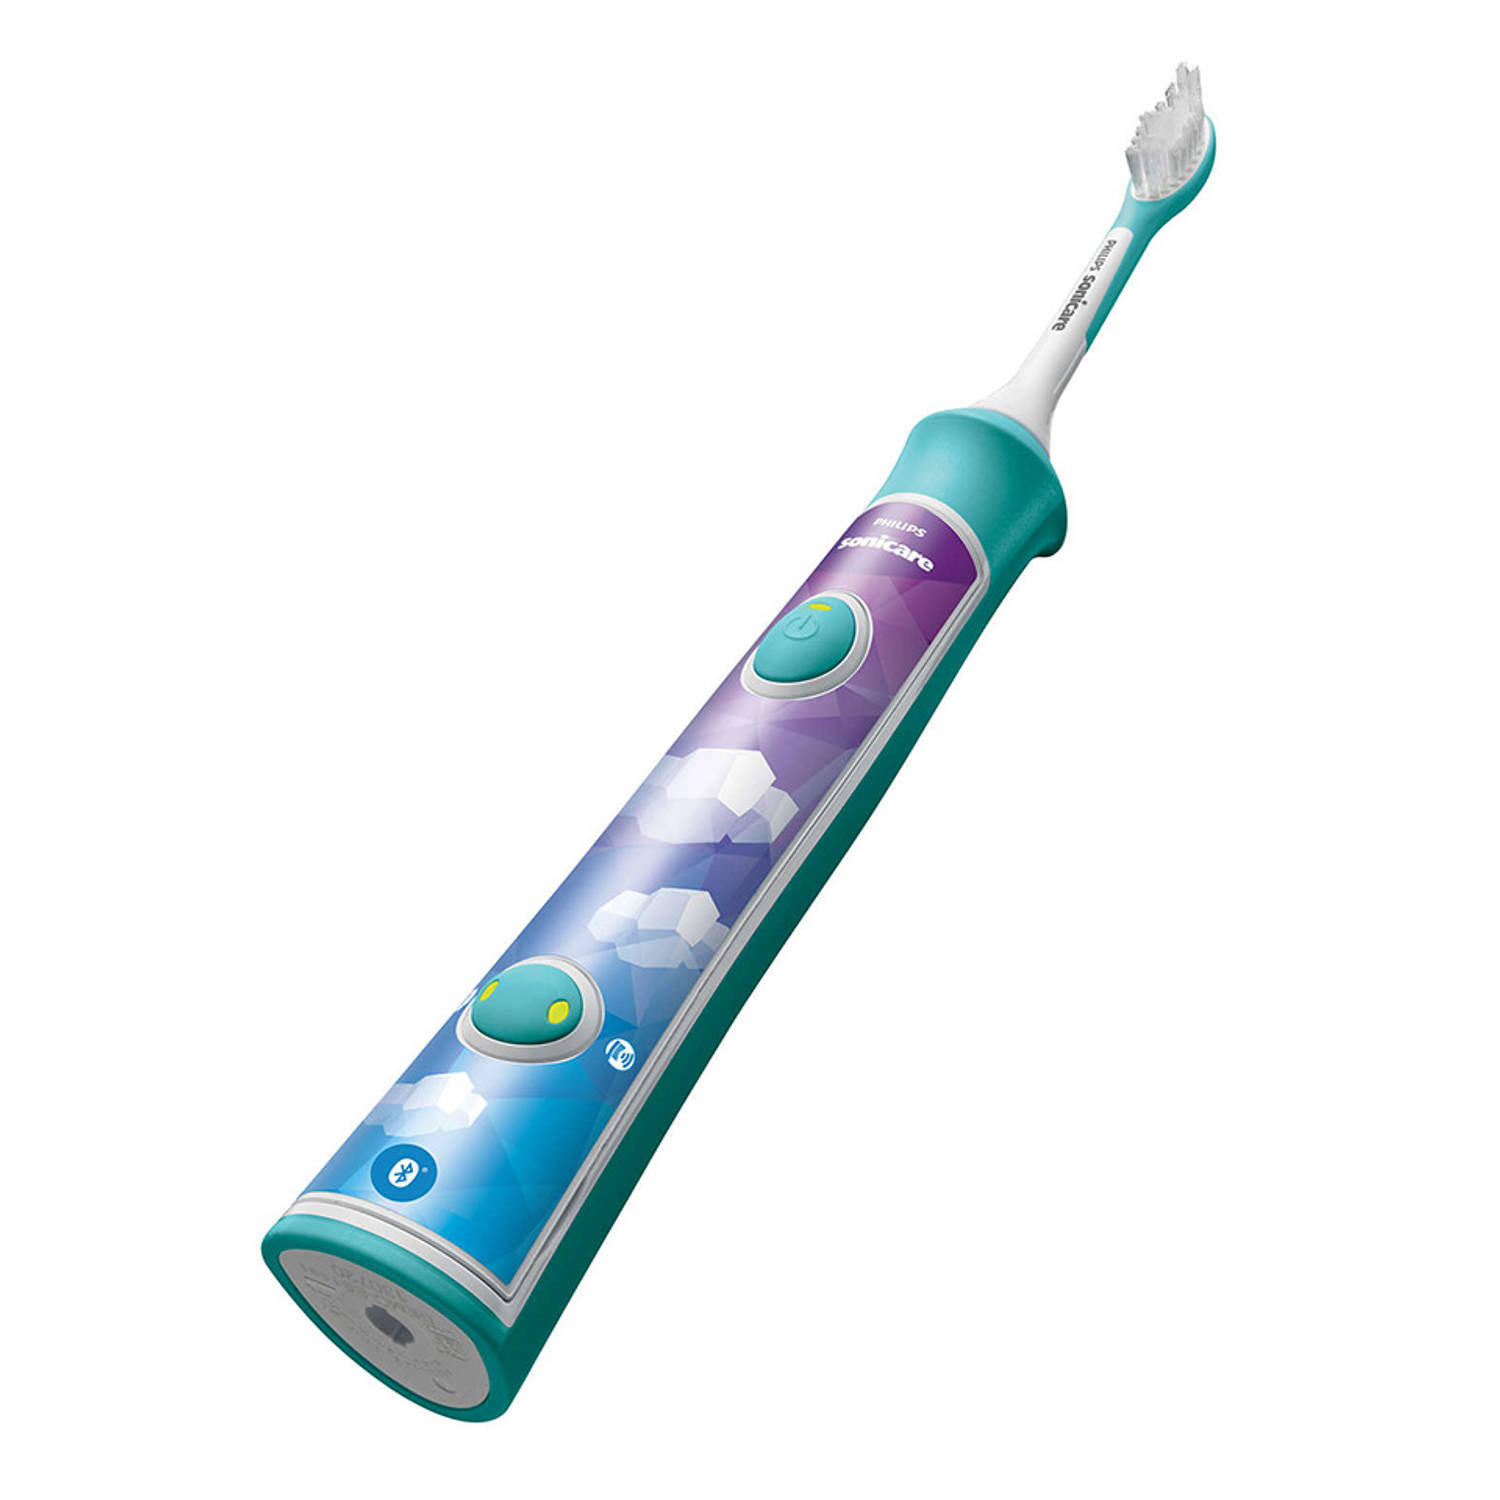 Specialiseren Heel veel goeds Aanbevolen Philips Sonicare elektrische tandenborstel For Kids HX6321/03 - blauw |  Blokker